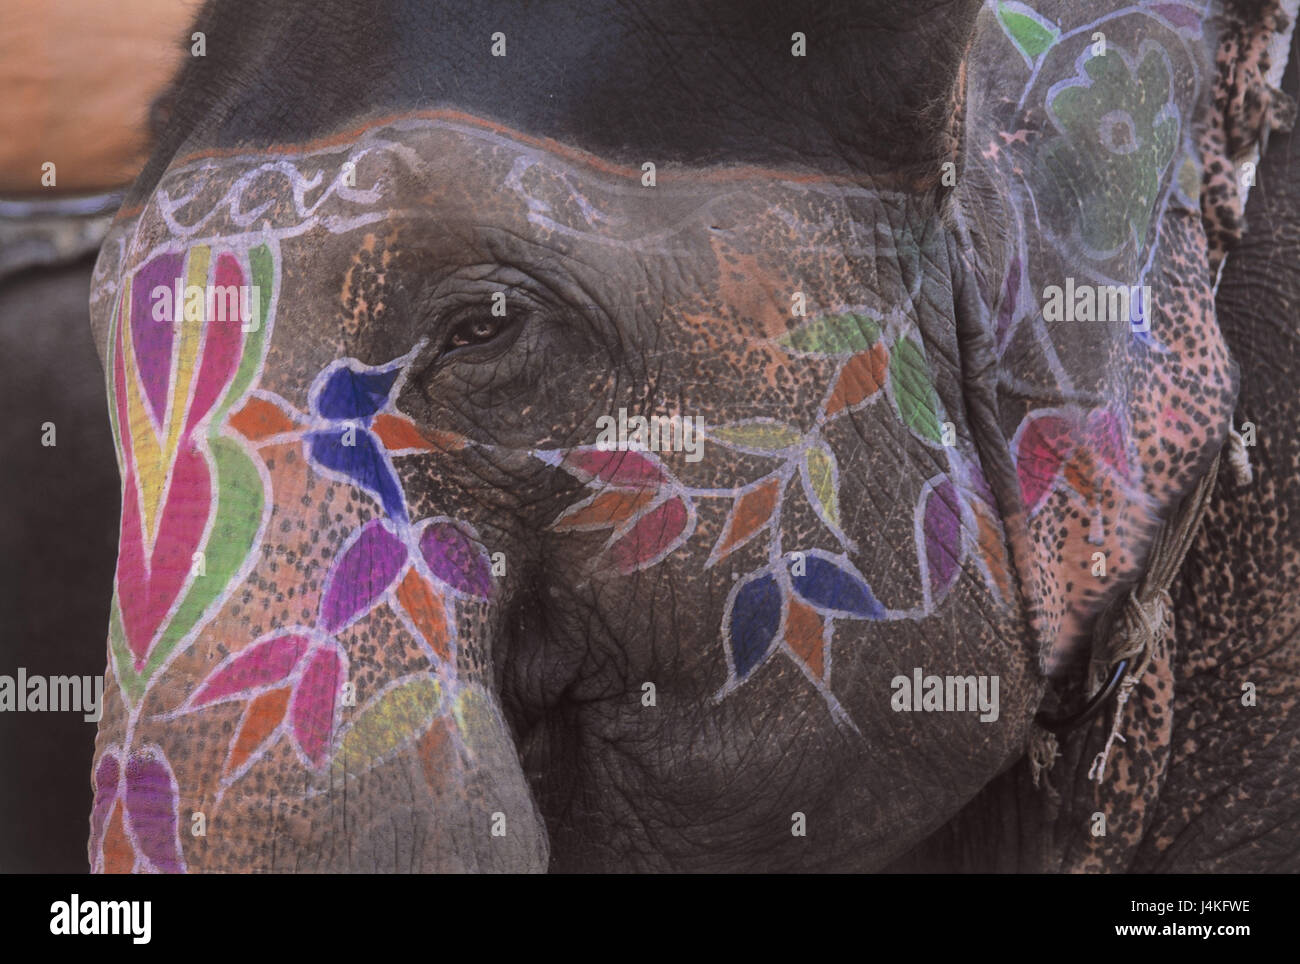 L'Inde, Rajasthan, Jaipur, éléphant indien, Elephas maximus Bengali's sis, chef, peintures, détail d'Asie, d'animaux, animaux de compagnie, animaux sauvages, mammifères, les animaux, le tronc des animaux, pachydermes, mammifères terrestres, les éléphants, l'éléphant, de randonnée, attraction touristique Banque D'Images